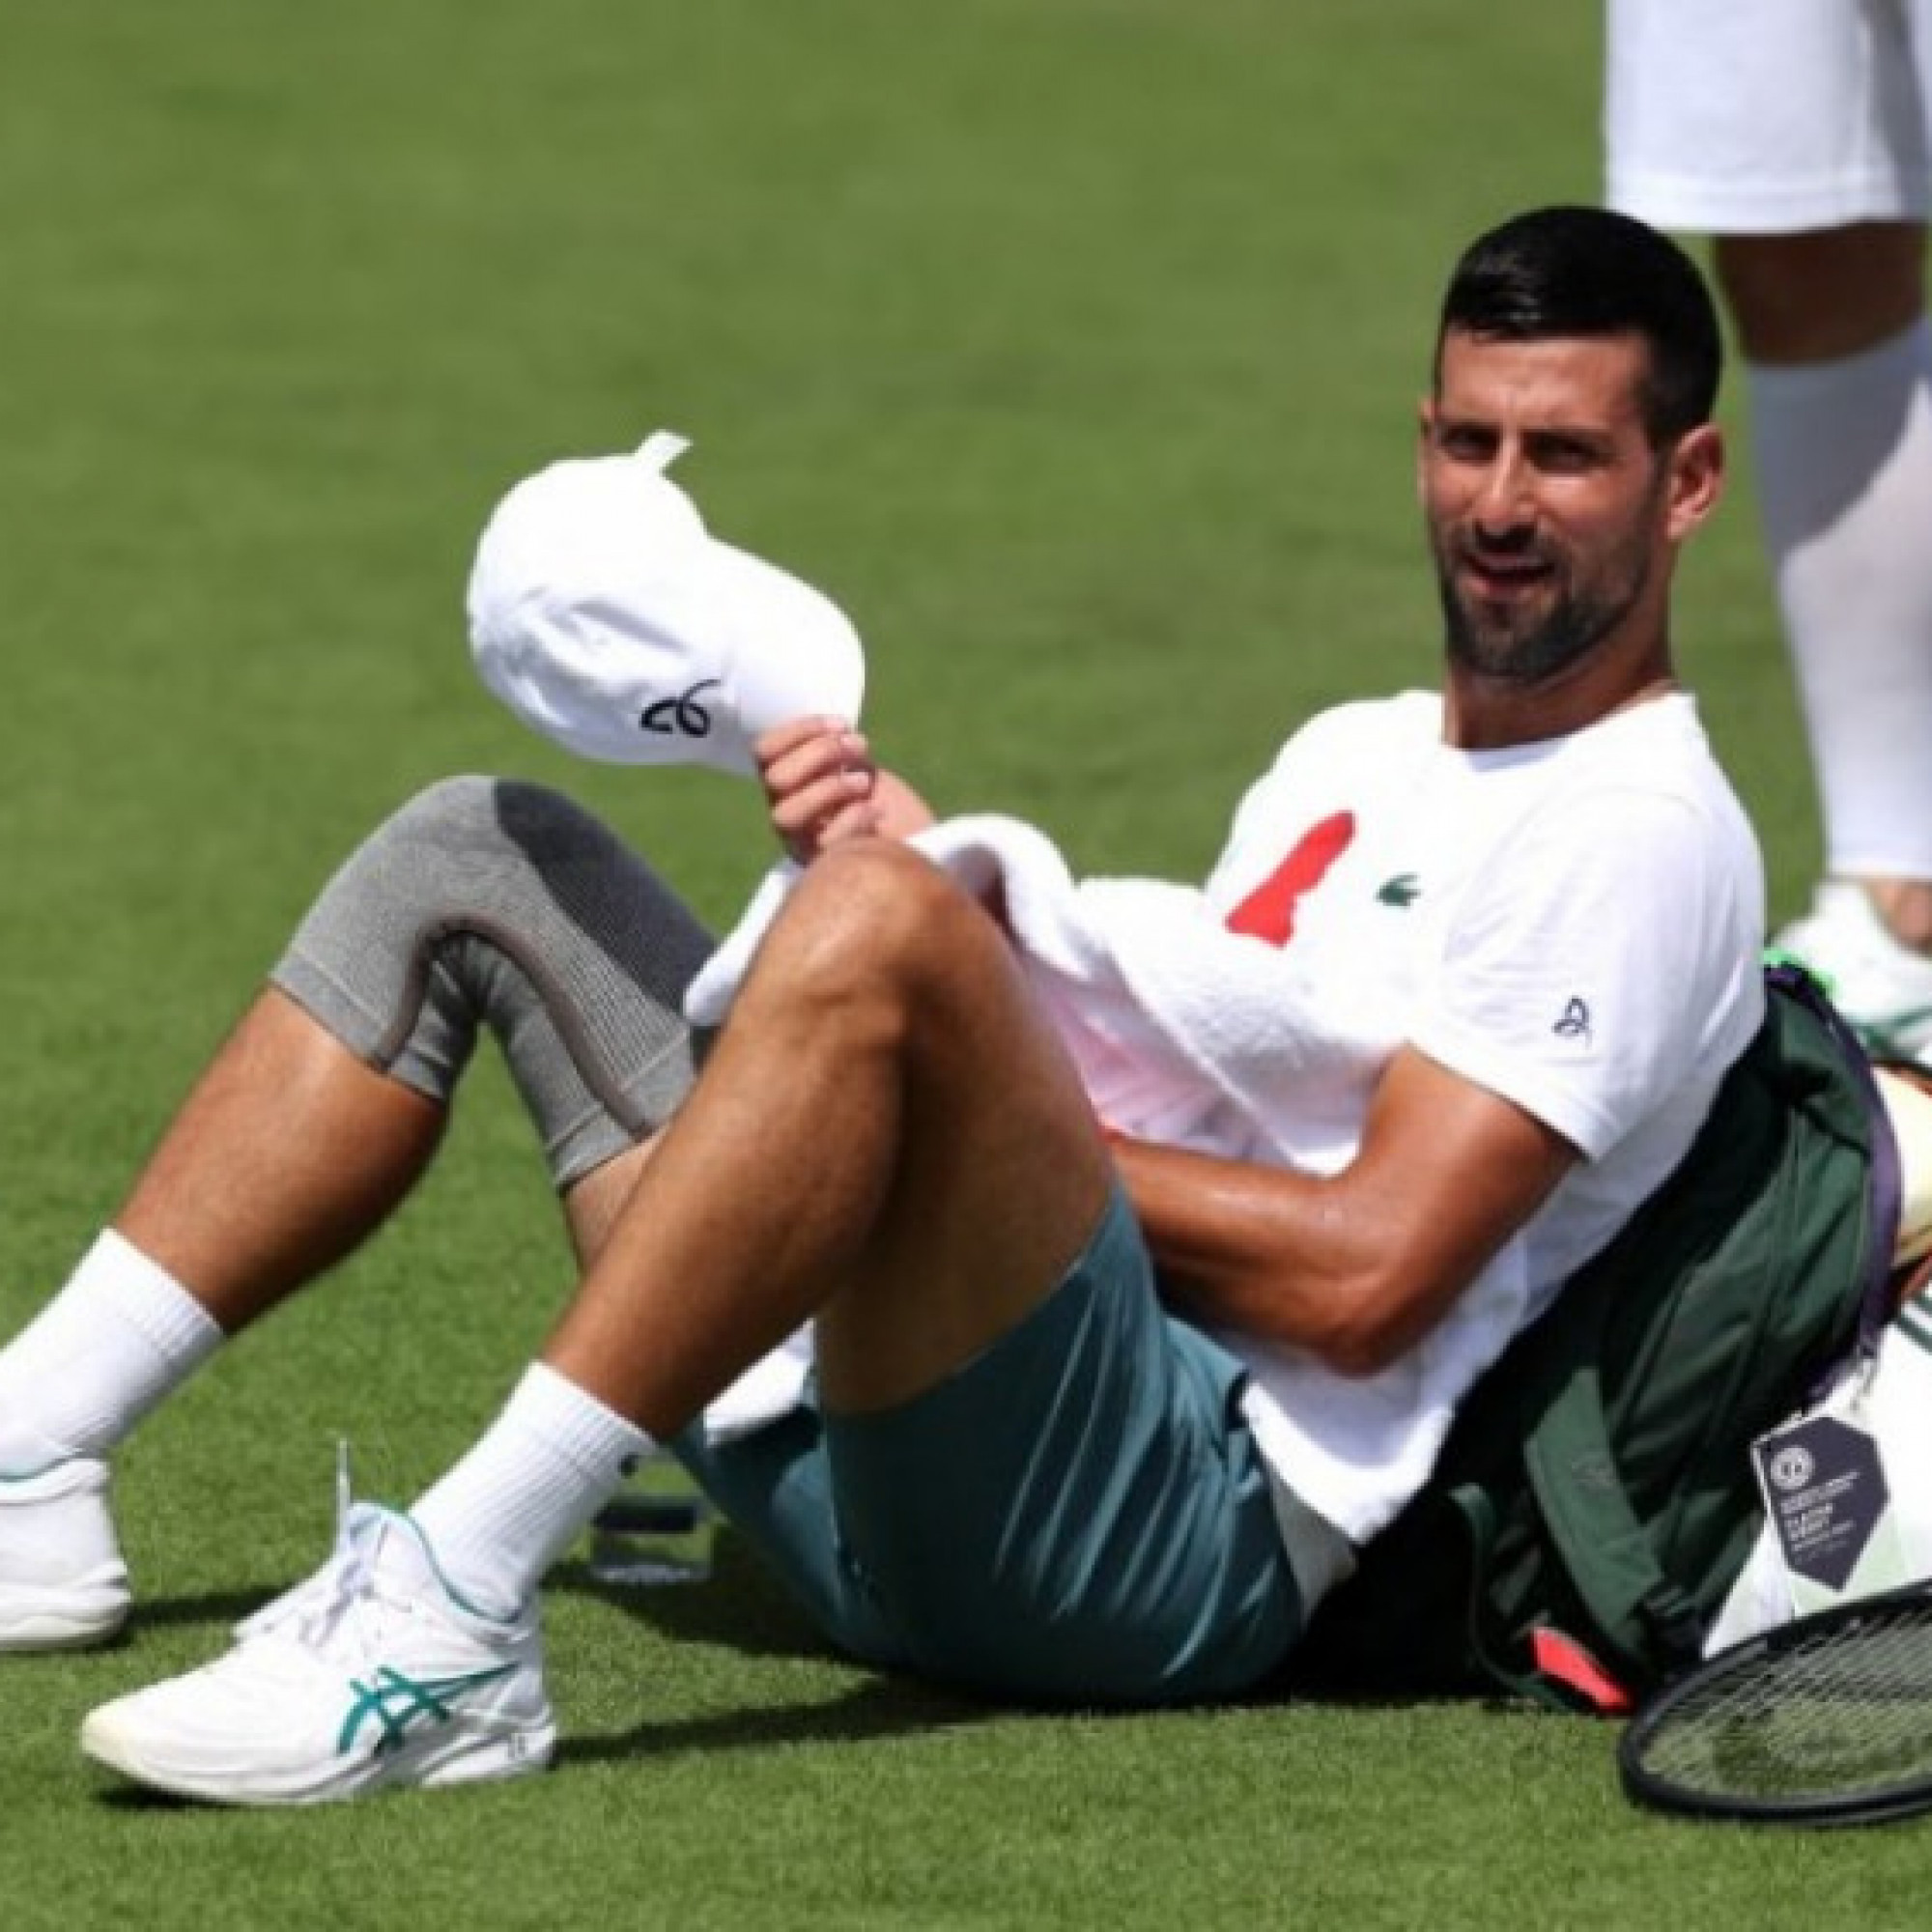  - Nóng nhất thể thao sáng 8/7: Djokovic bị nghi ngờ làm giả phẫu thuật